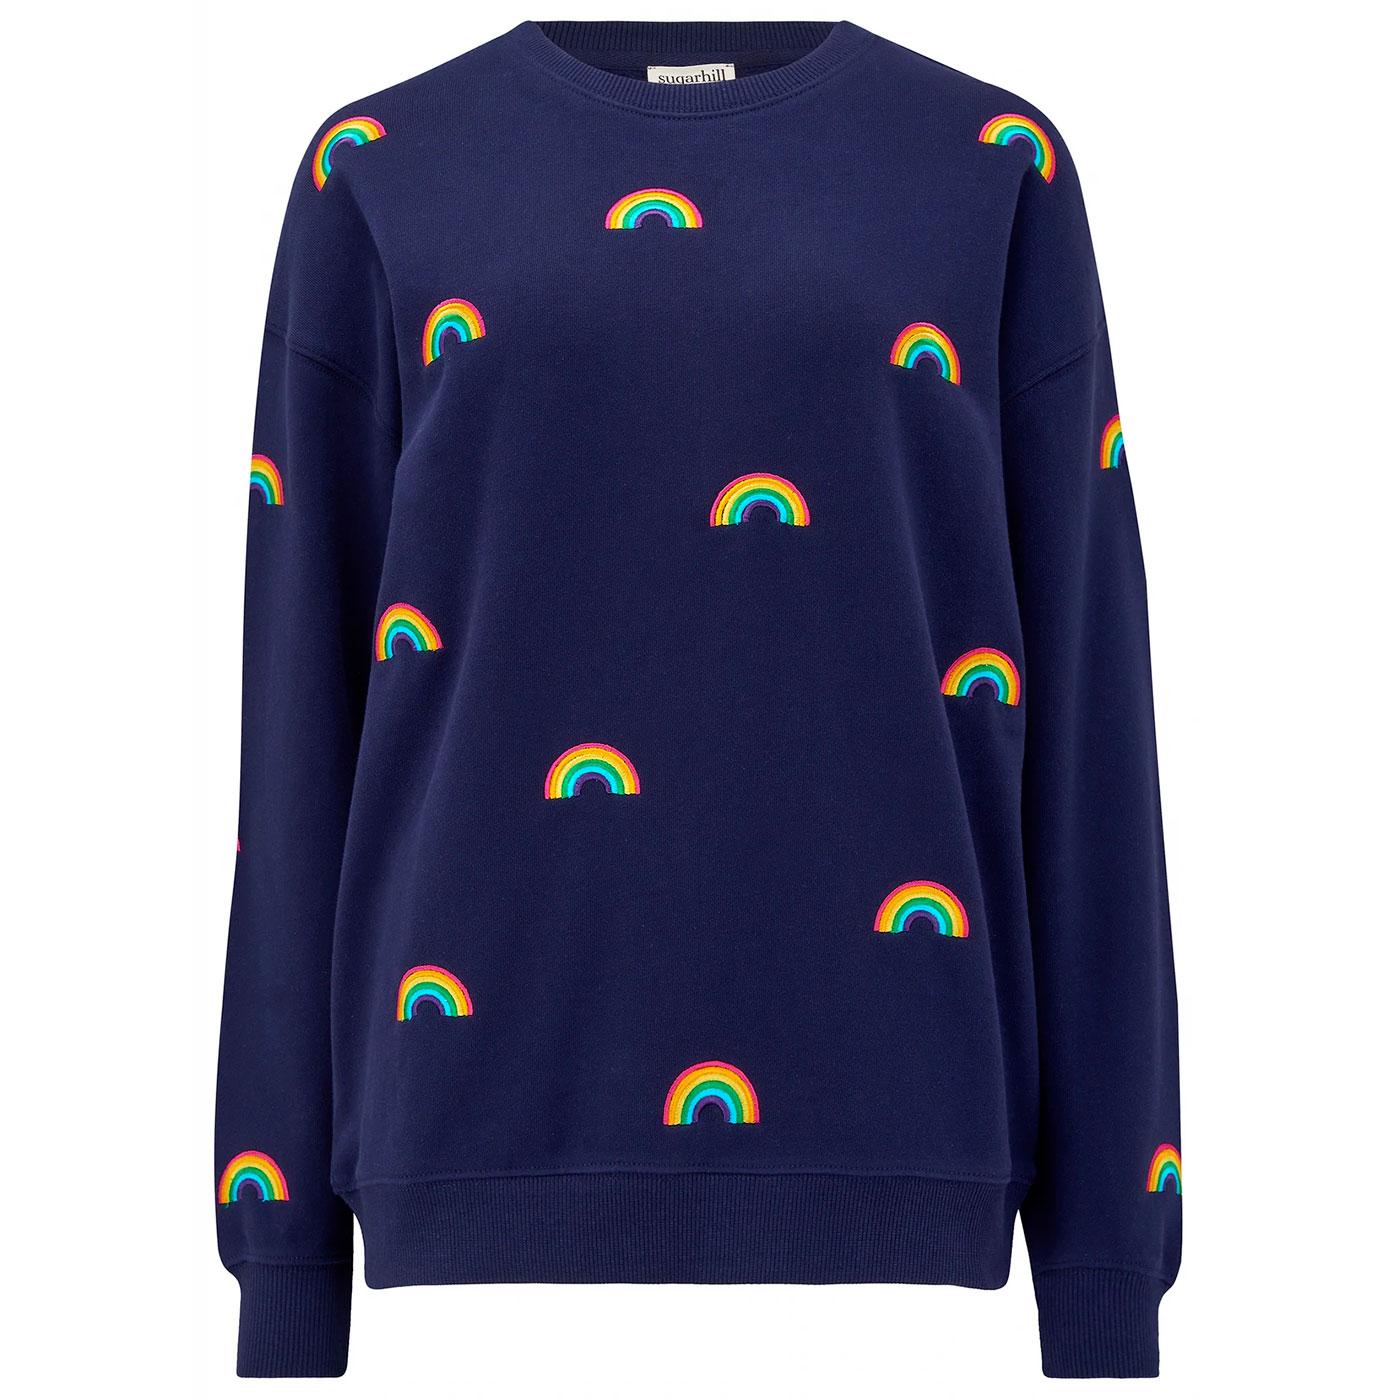 Noah SUGARHILL Retro Embroidered Rainbows Sweater